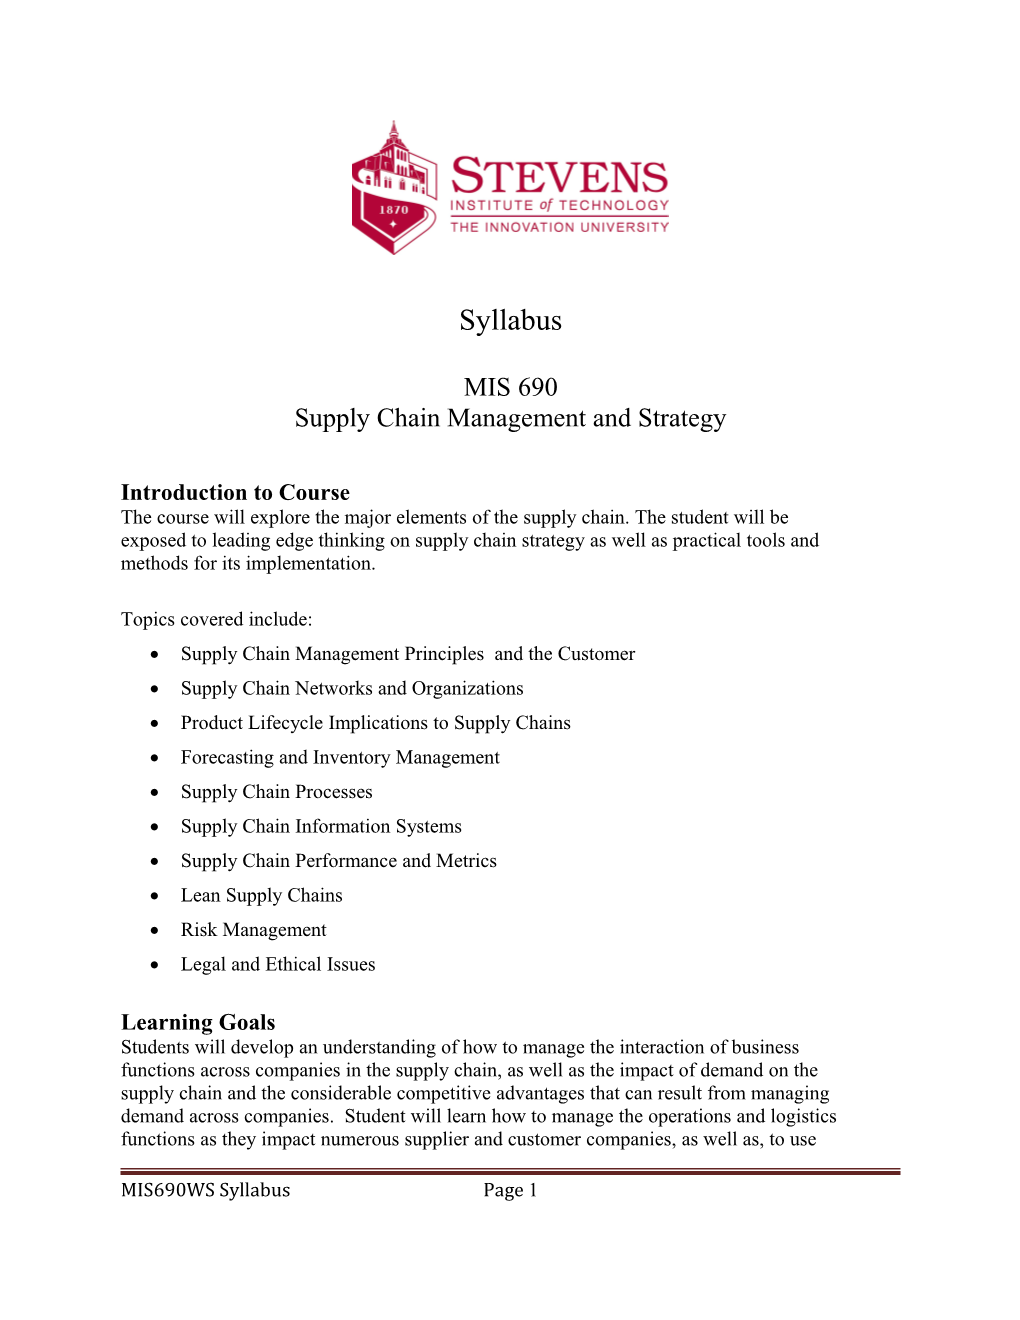 Stevens Institute of Technology s1